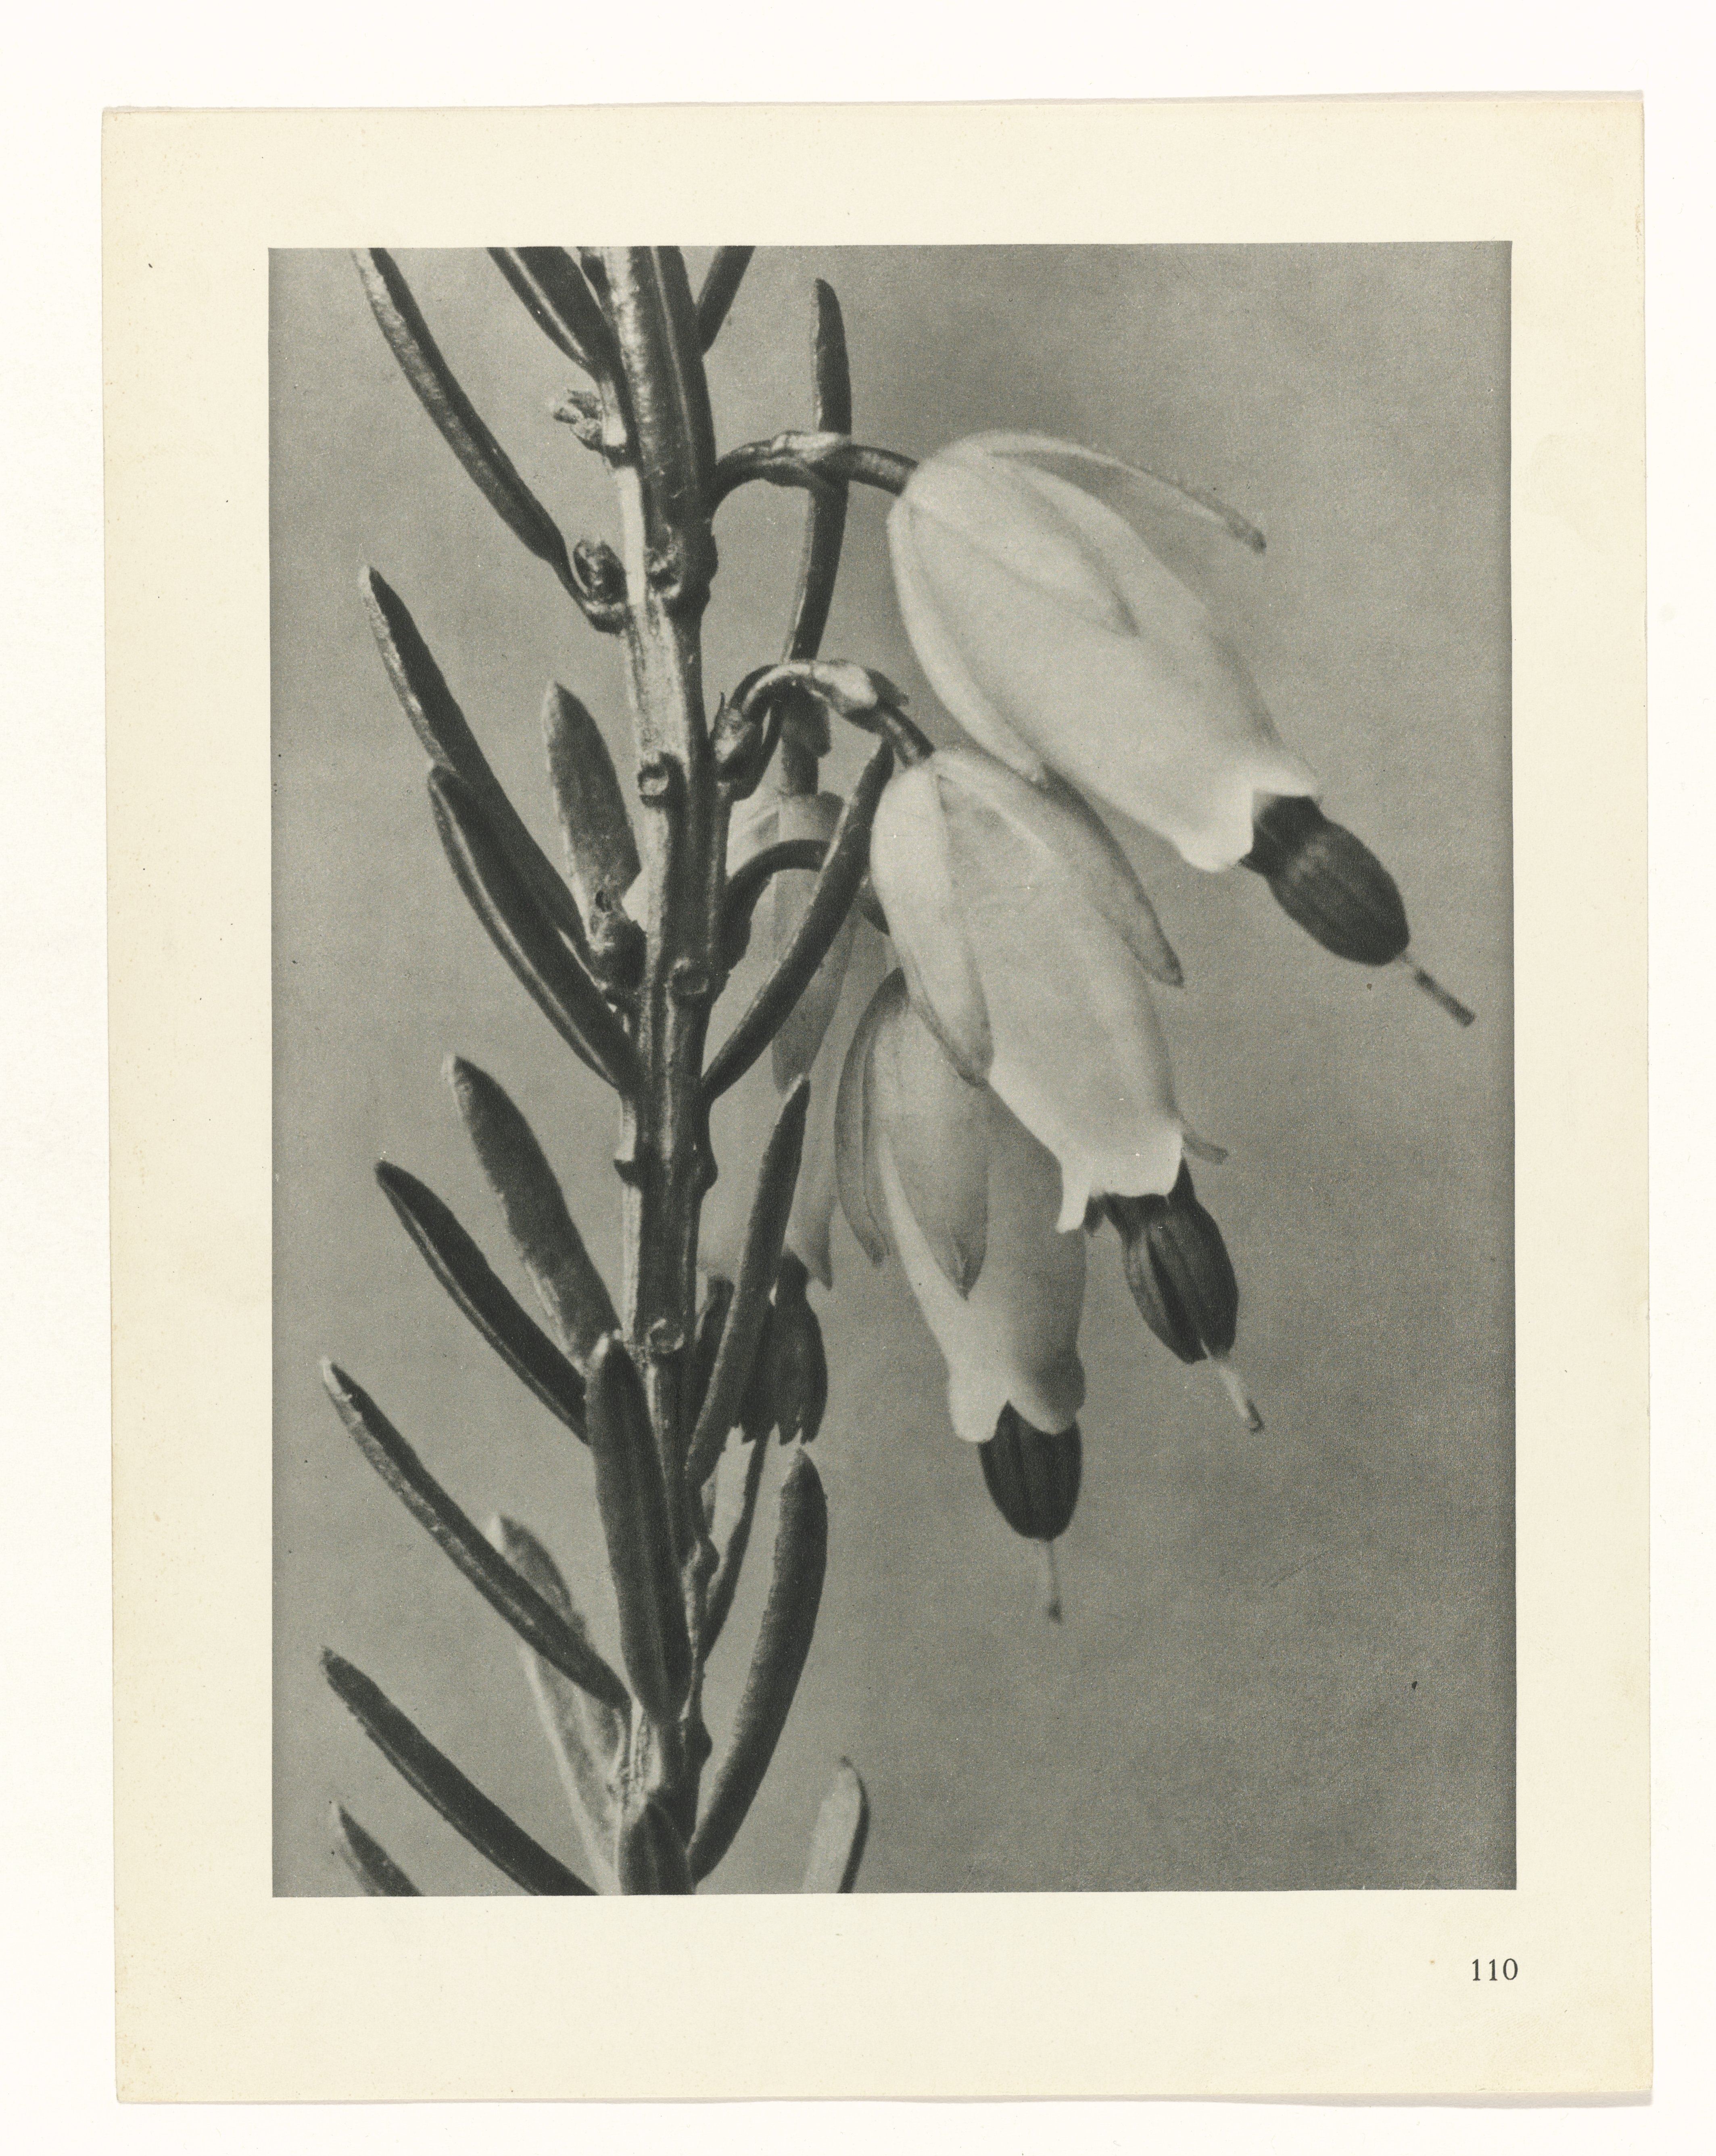 Karl Blossfeldt :: Plantstudie, 1928. Urformen der Kunst: photographische Pflanzenbilder. Karl Blossfeldt, Karl Nierendorf, publisher: Ernst Wasmuth, Berlin, 1928. | src Rijksmuseum